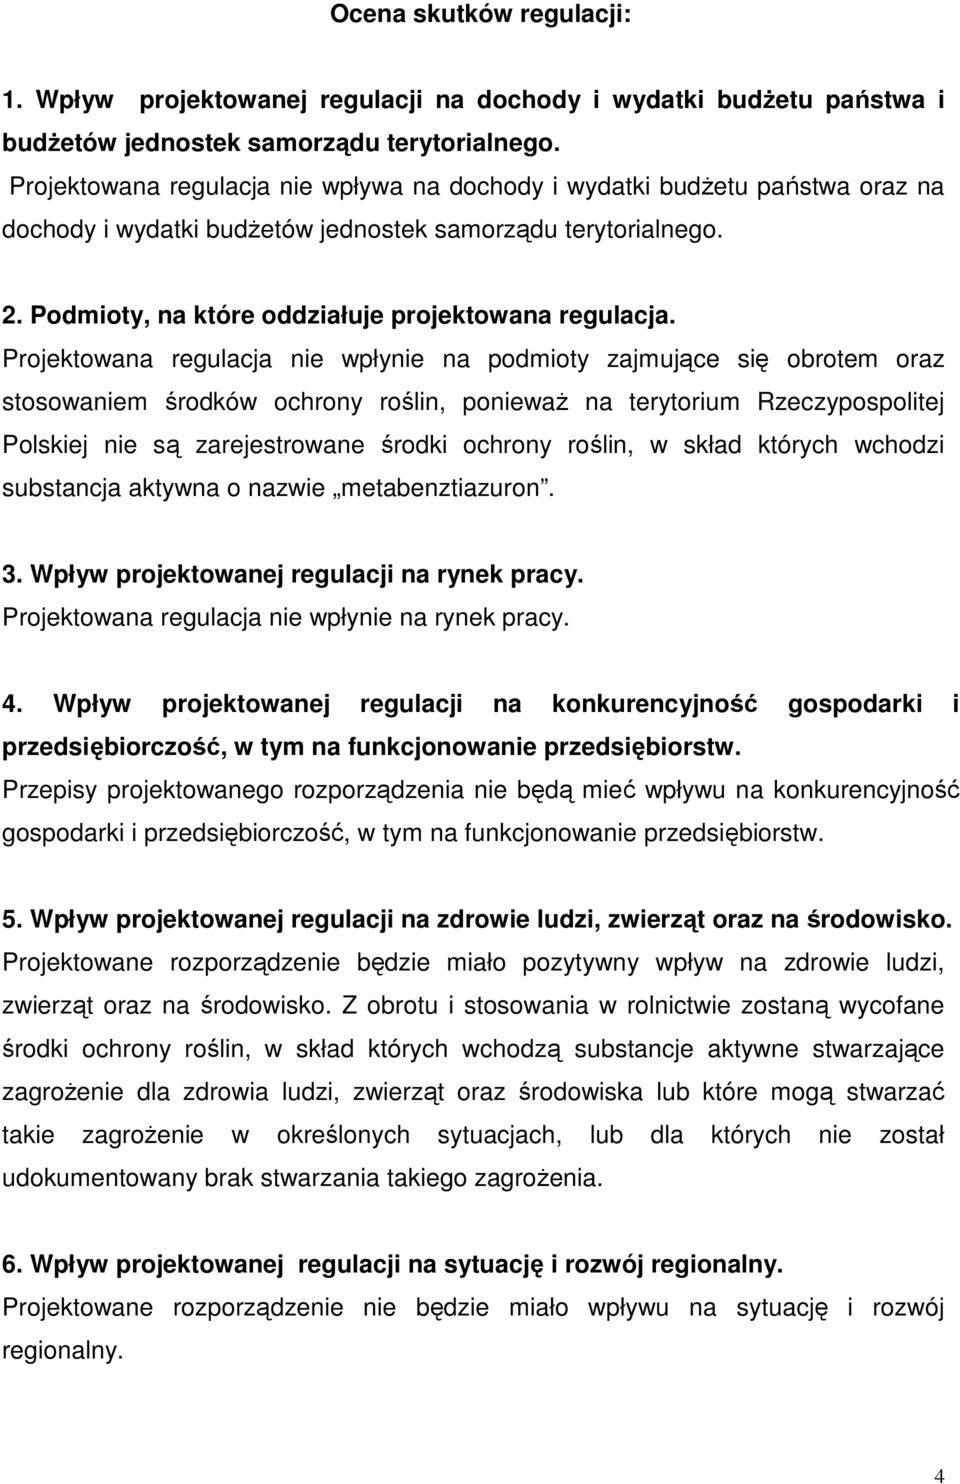 Projektowana regulacja nie wpłynie na podmioty zajmujące się obrotem oraz stosowaniem środków ochrony roślin, poniewaŝ na terytorium Rzeczypospolitej Polskiej nie są zarejestrowane środki ochrony